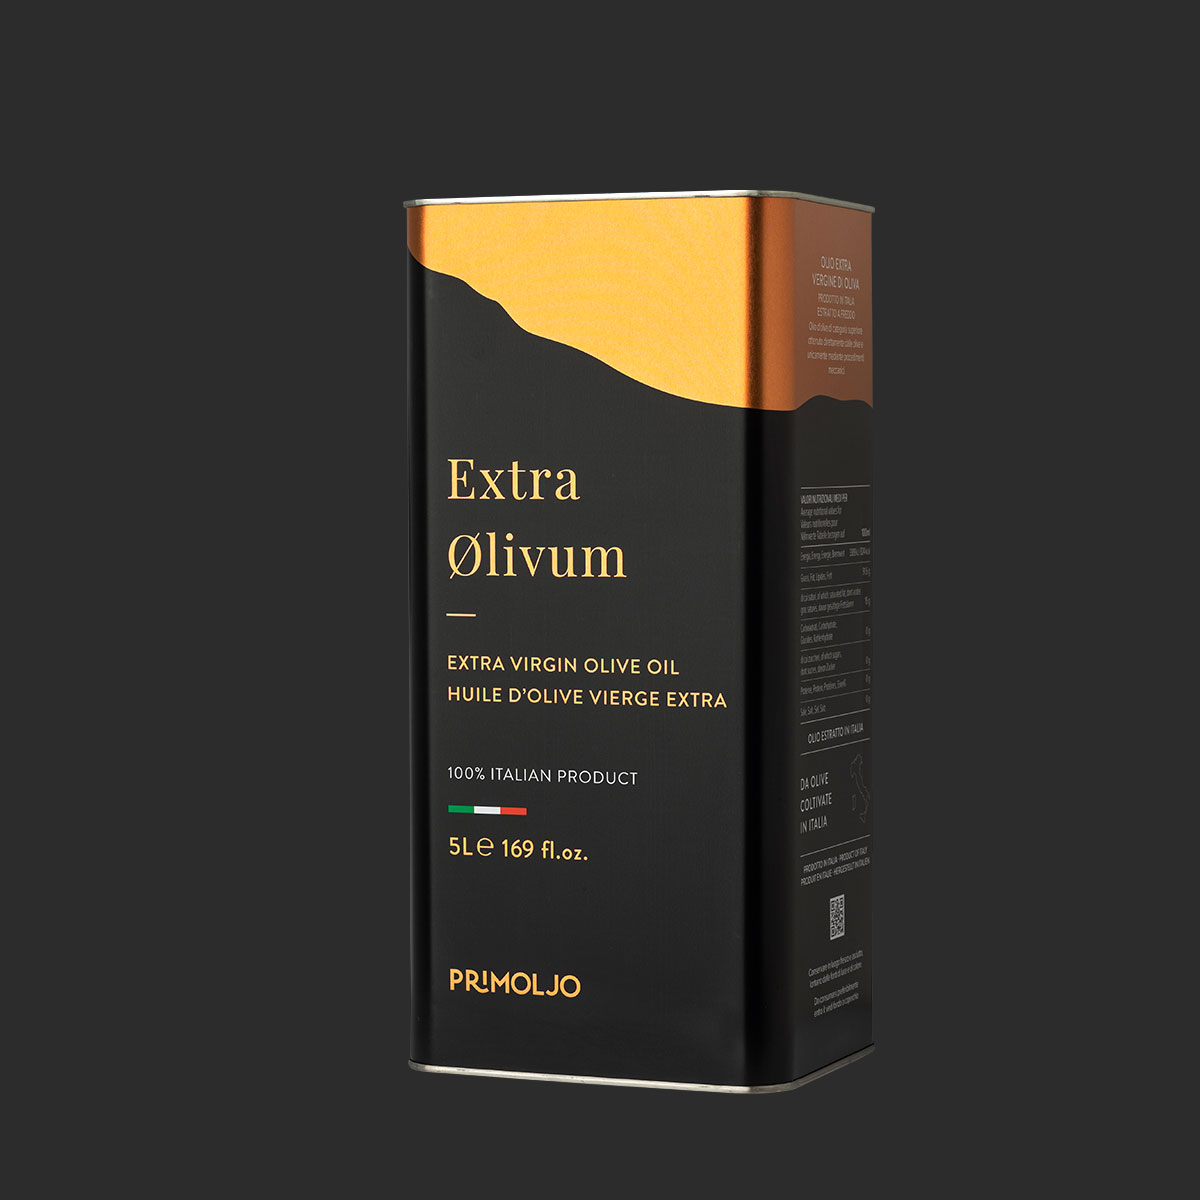 extra olivum promoljo latta 5L